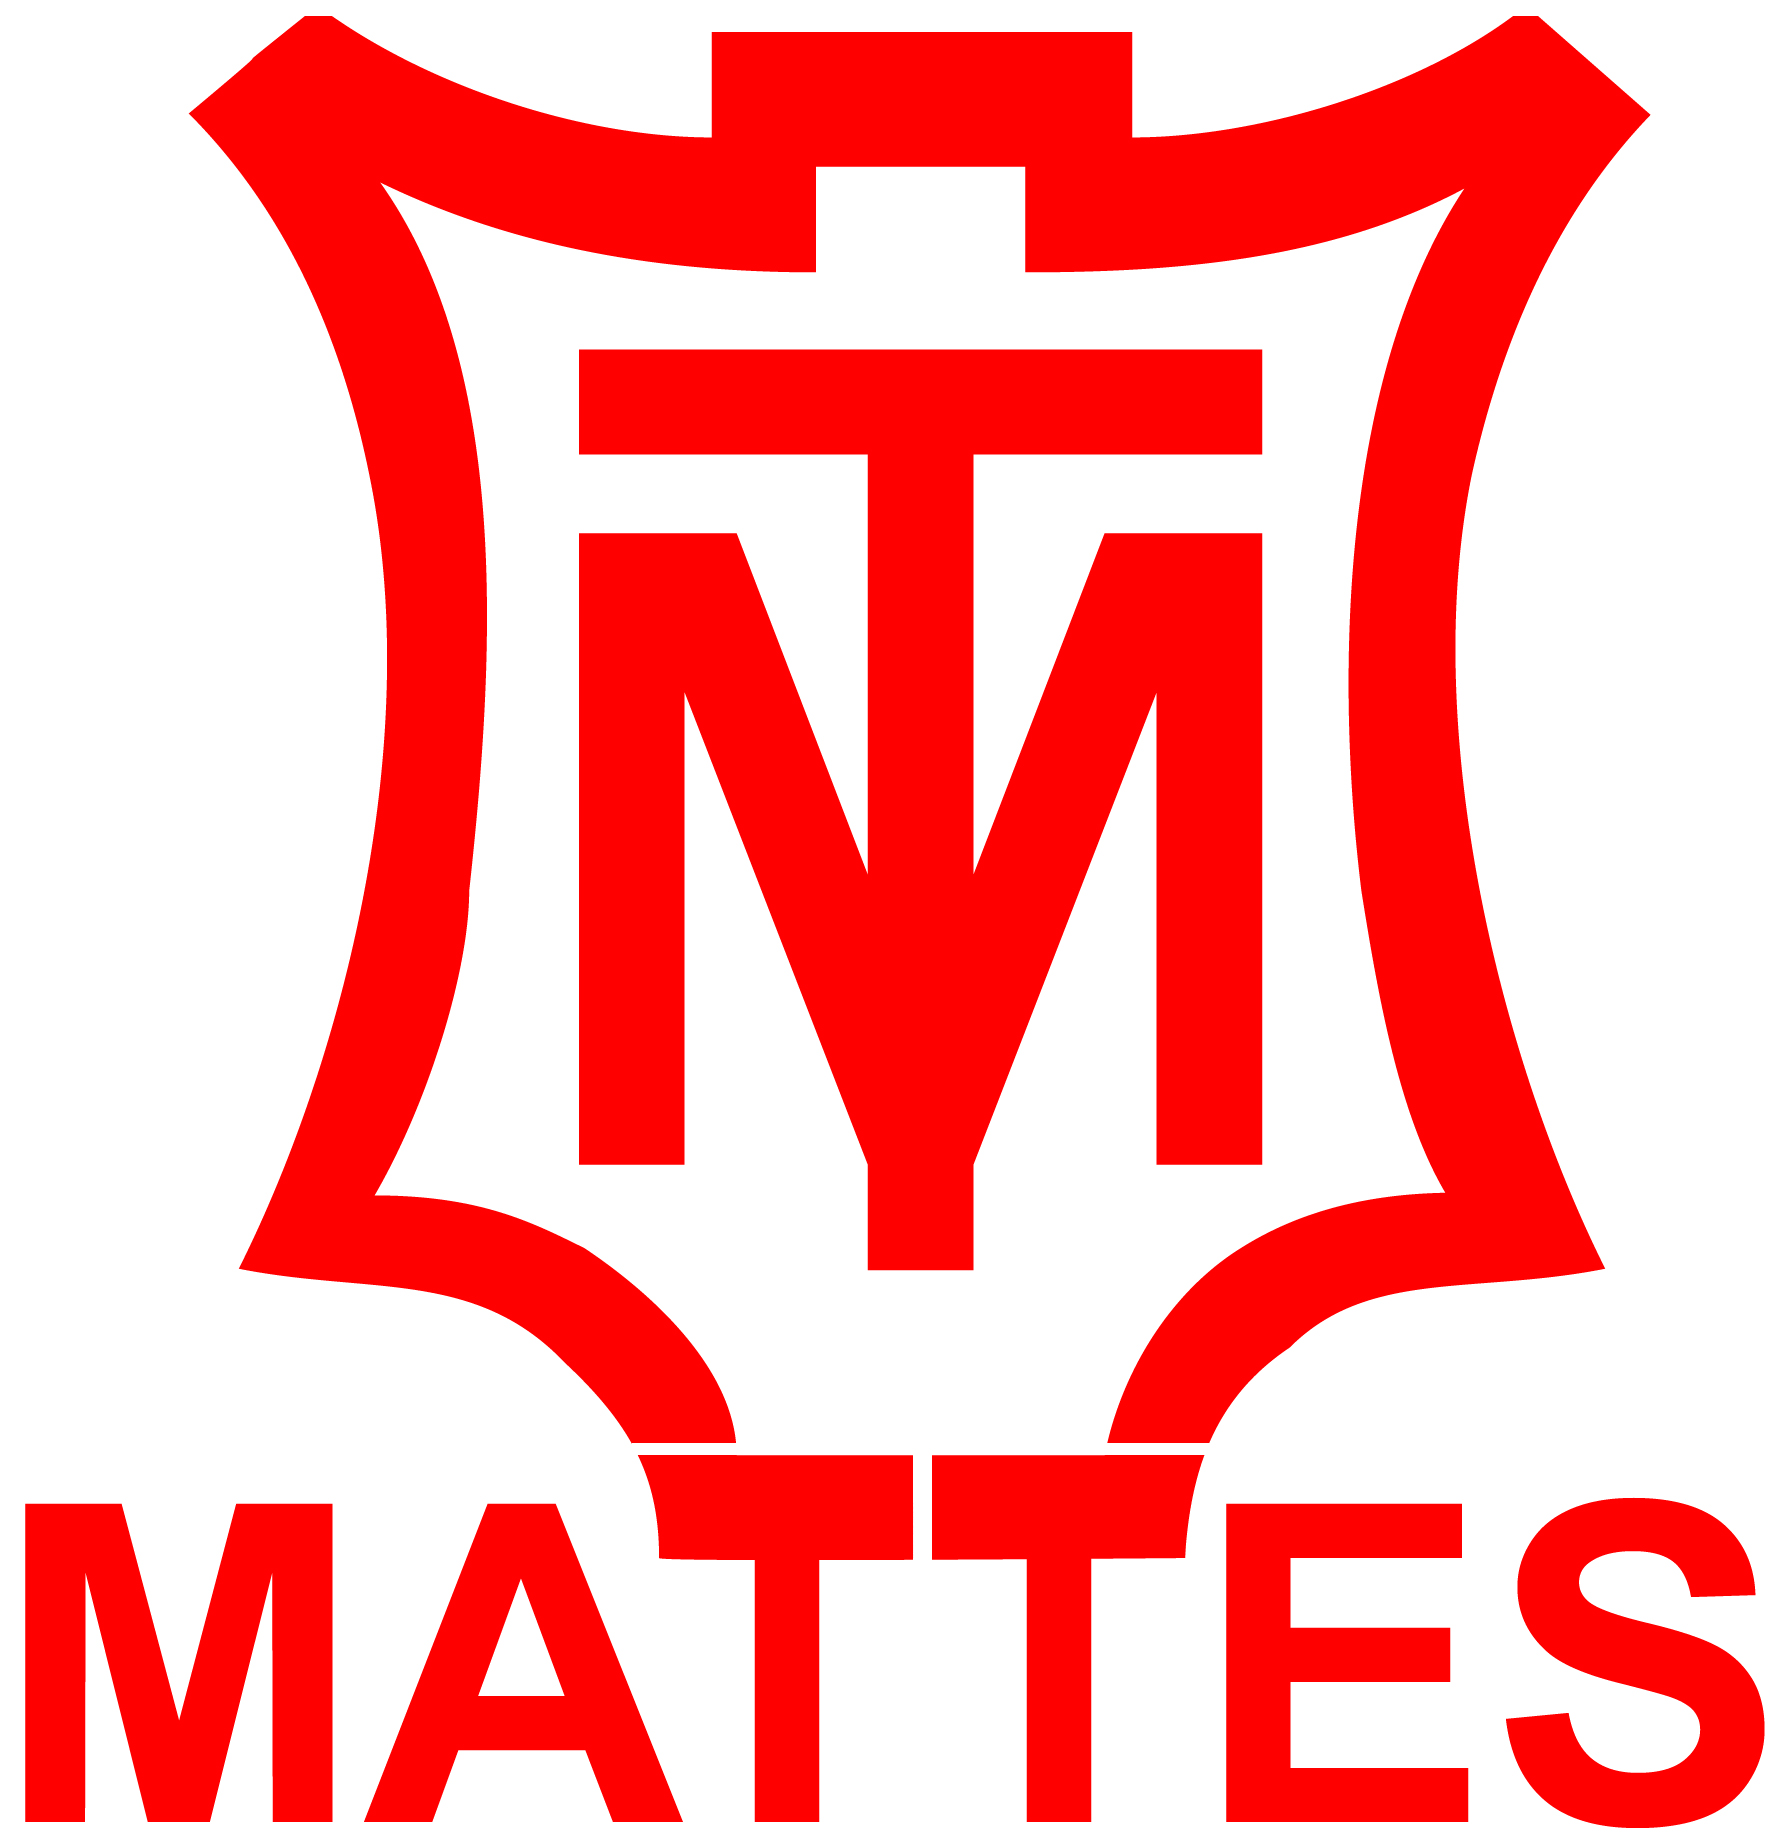 E.A. Mattes